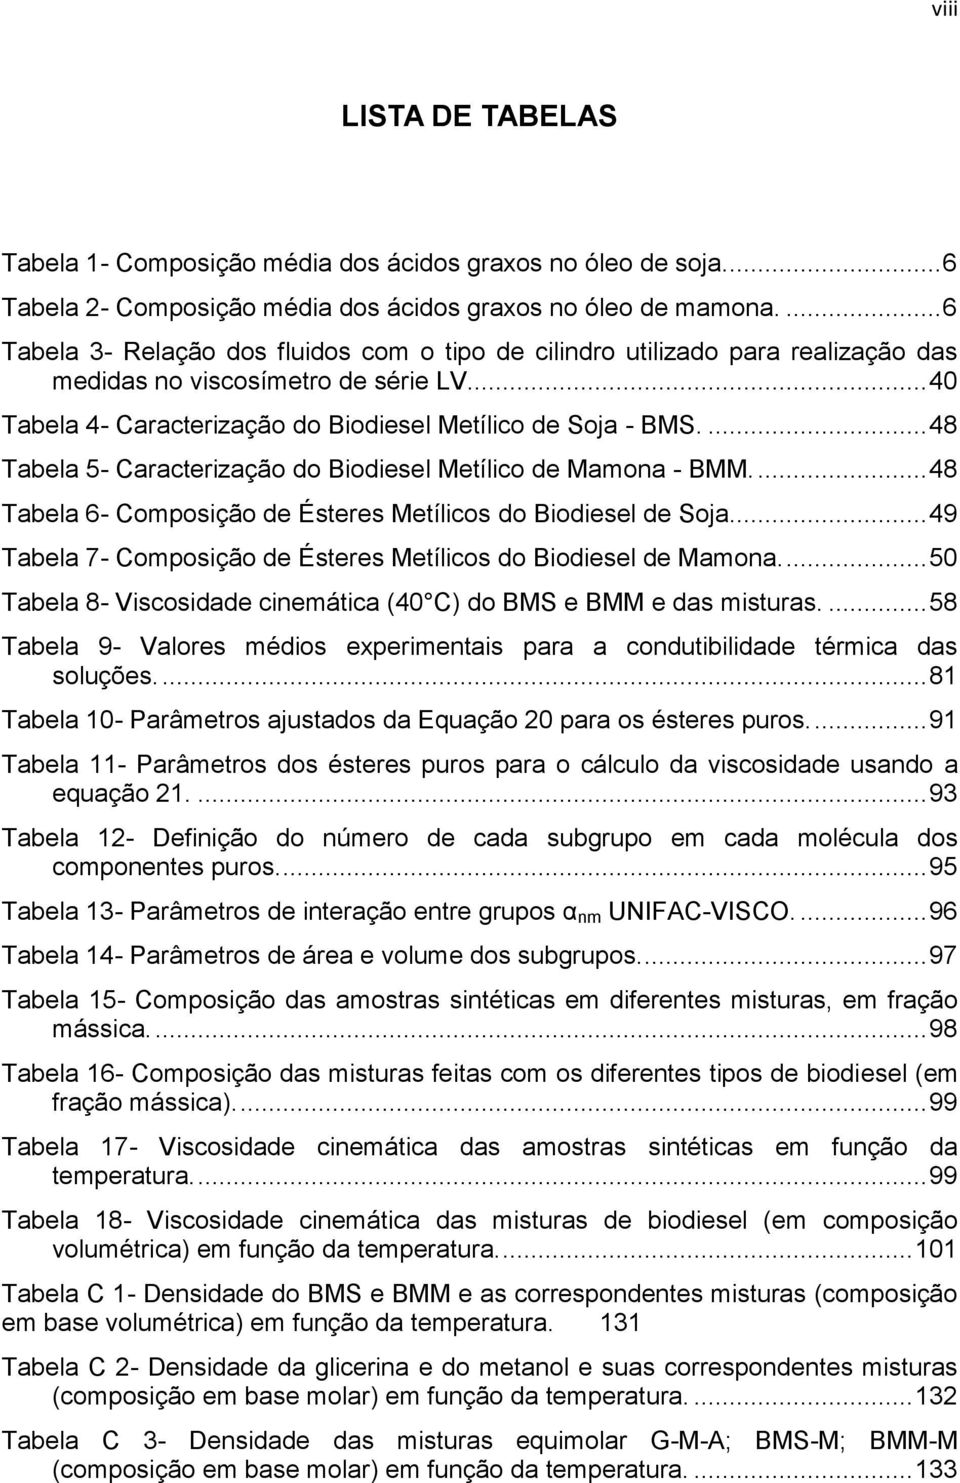 ... 48 Tabela 5- Caracterização do Biodiesel Metílico de Mamona - BMM.... 48 Tabela 6- Composição de Ésteres Metílicos do Biodiesel de Soja.